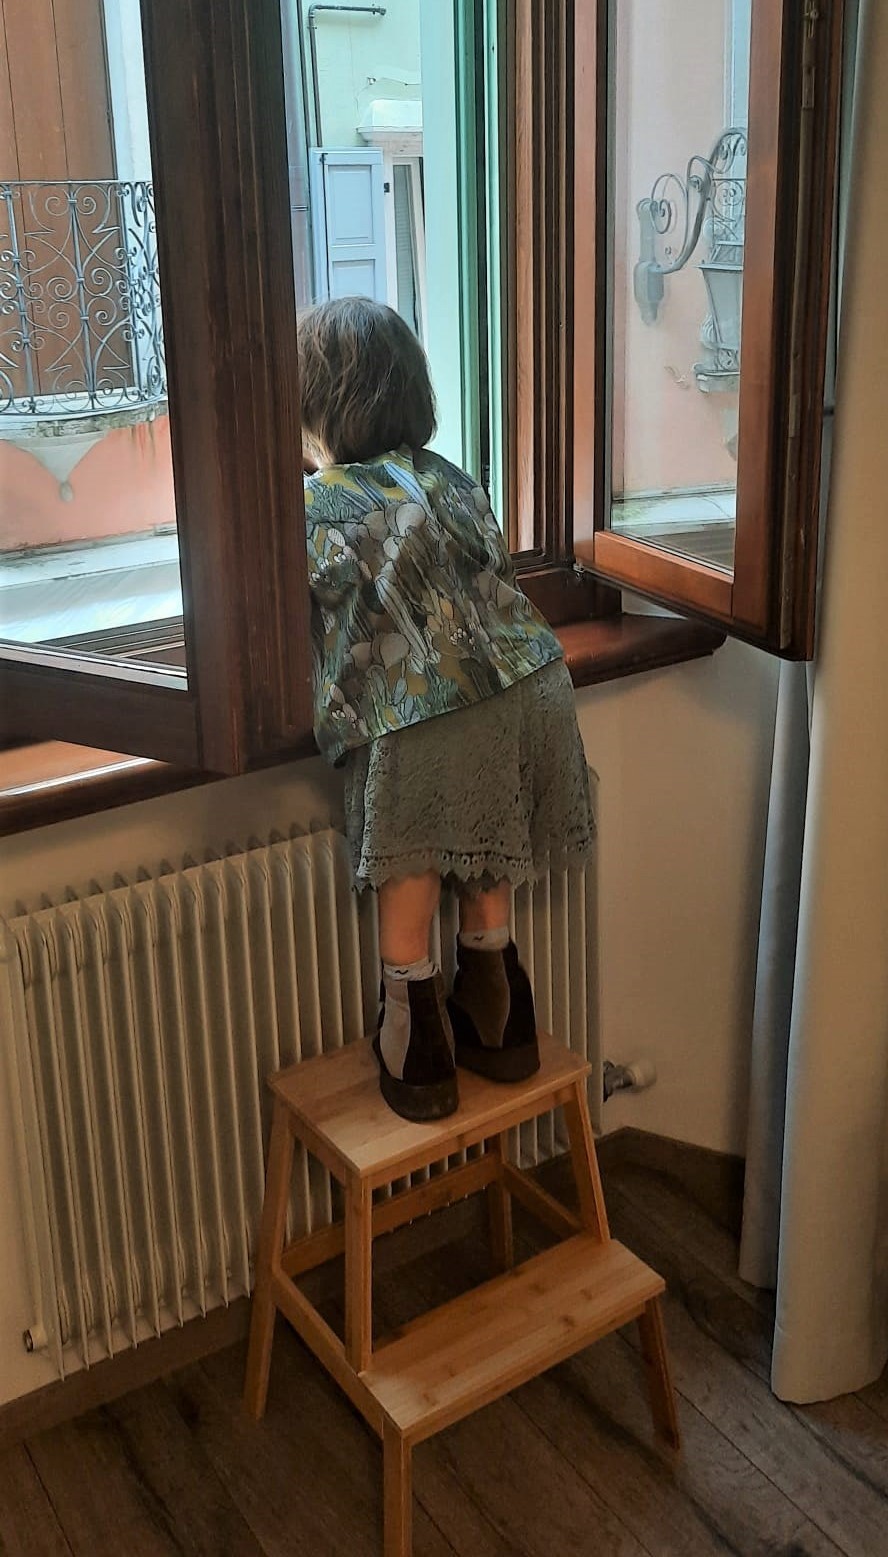 Nanabianca si affaccia alla finestra sopra a una scaletta